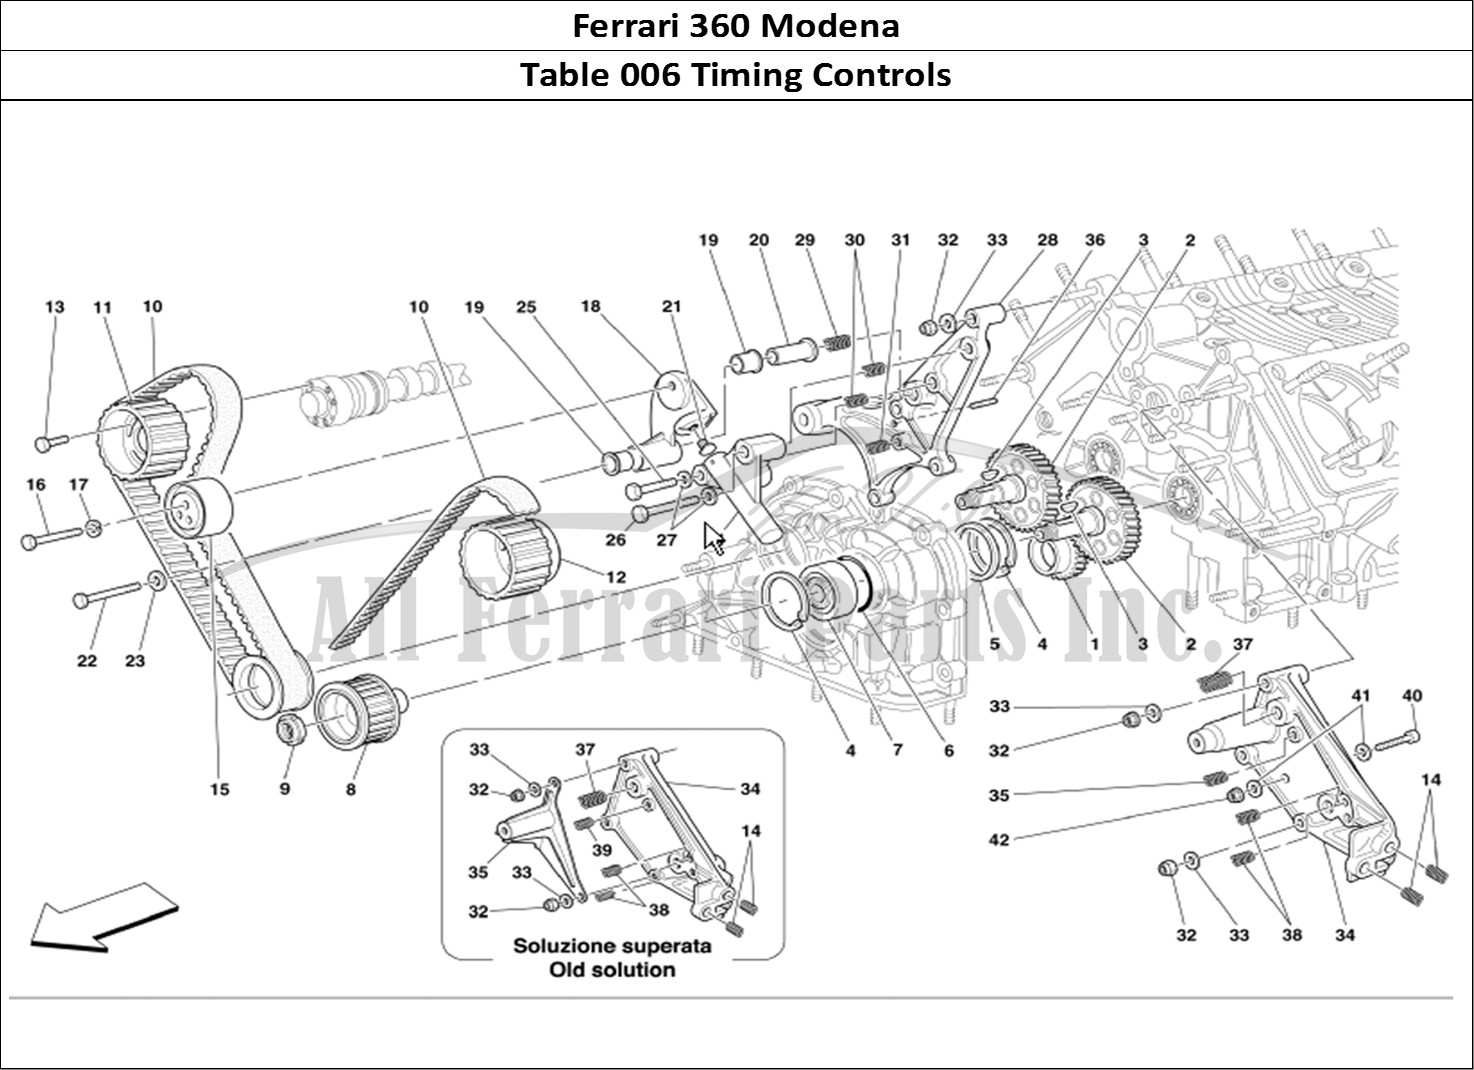 Ferrari Parts Ferrari 360 Modena Page 006 Timing Controls